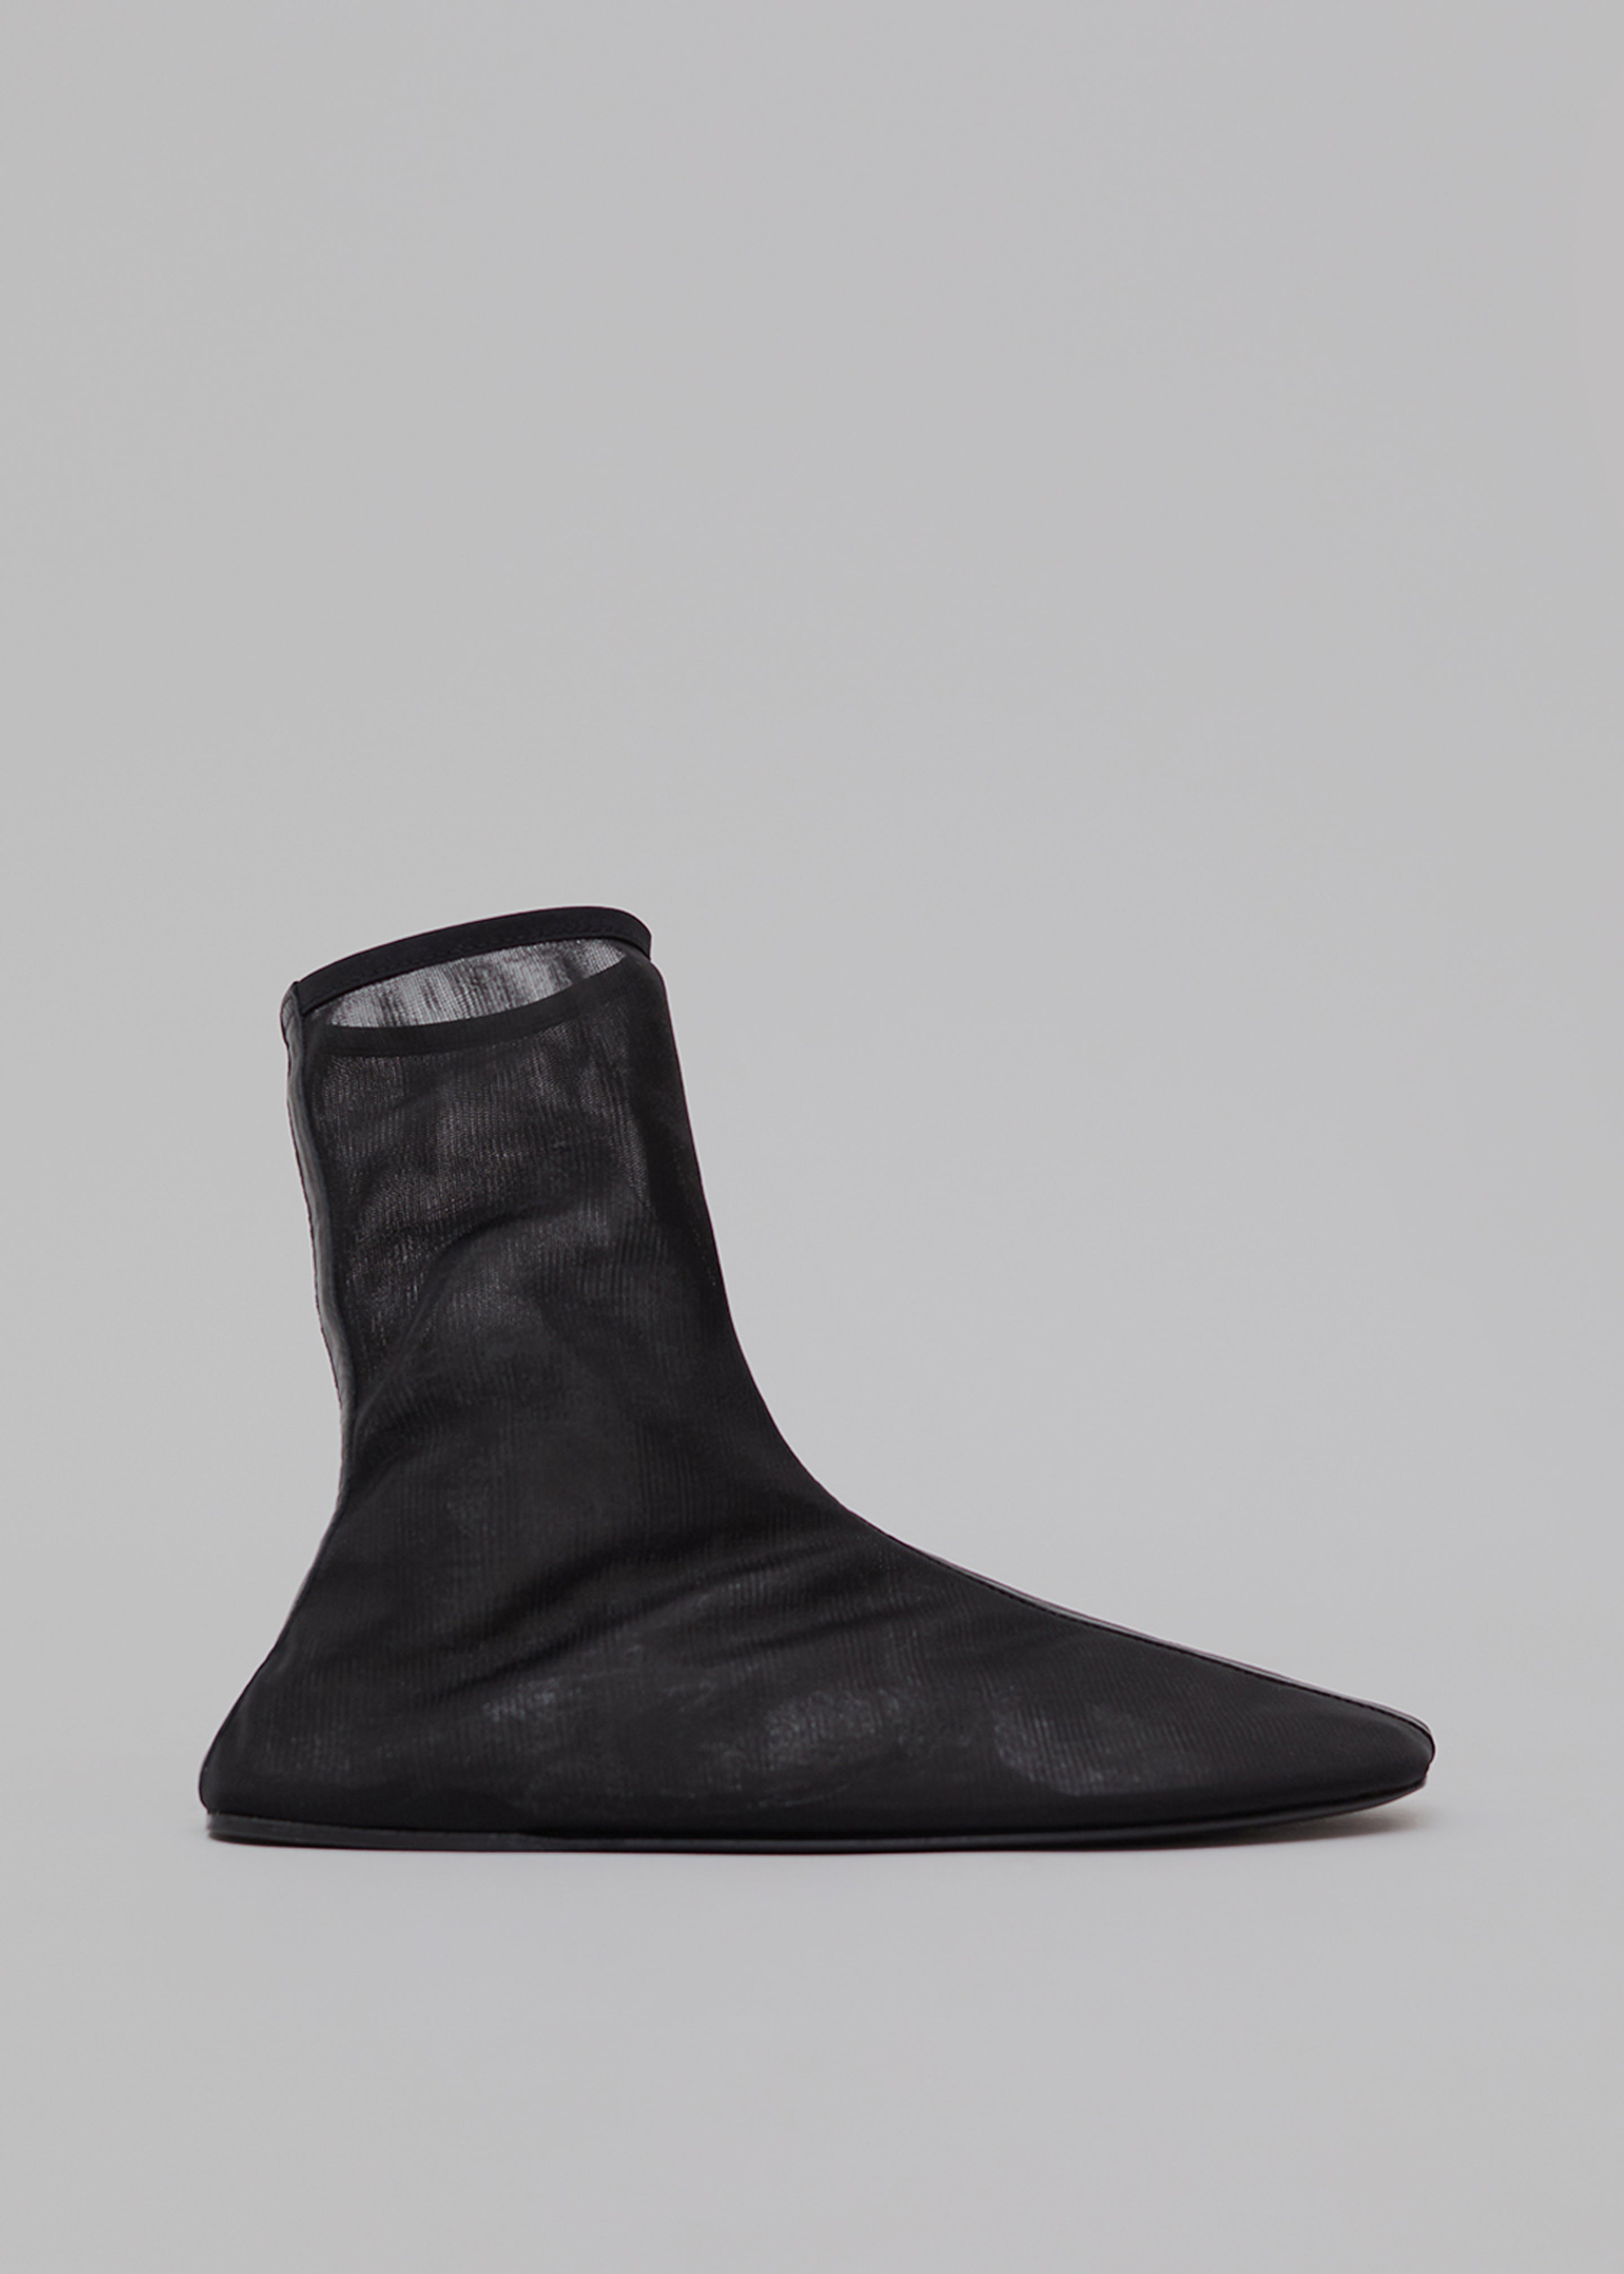 Christopher Esber Benson Ankle Boots - Black - 1